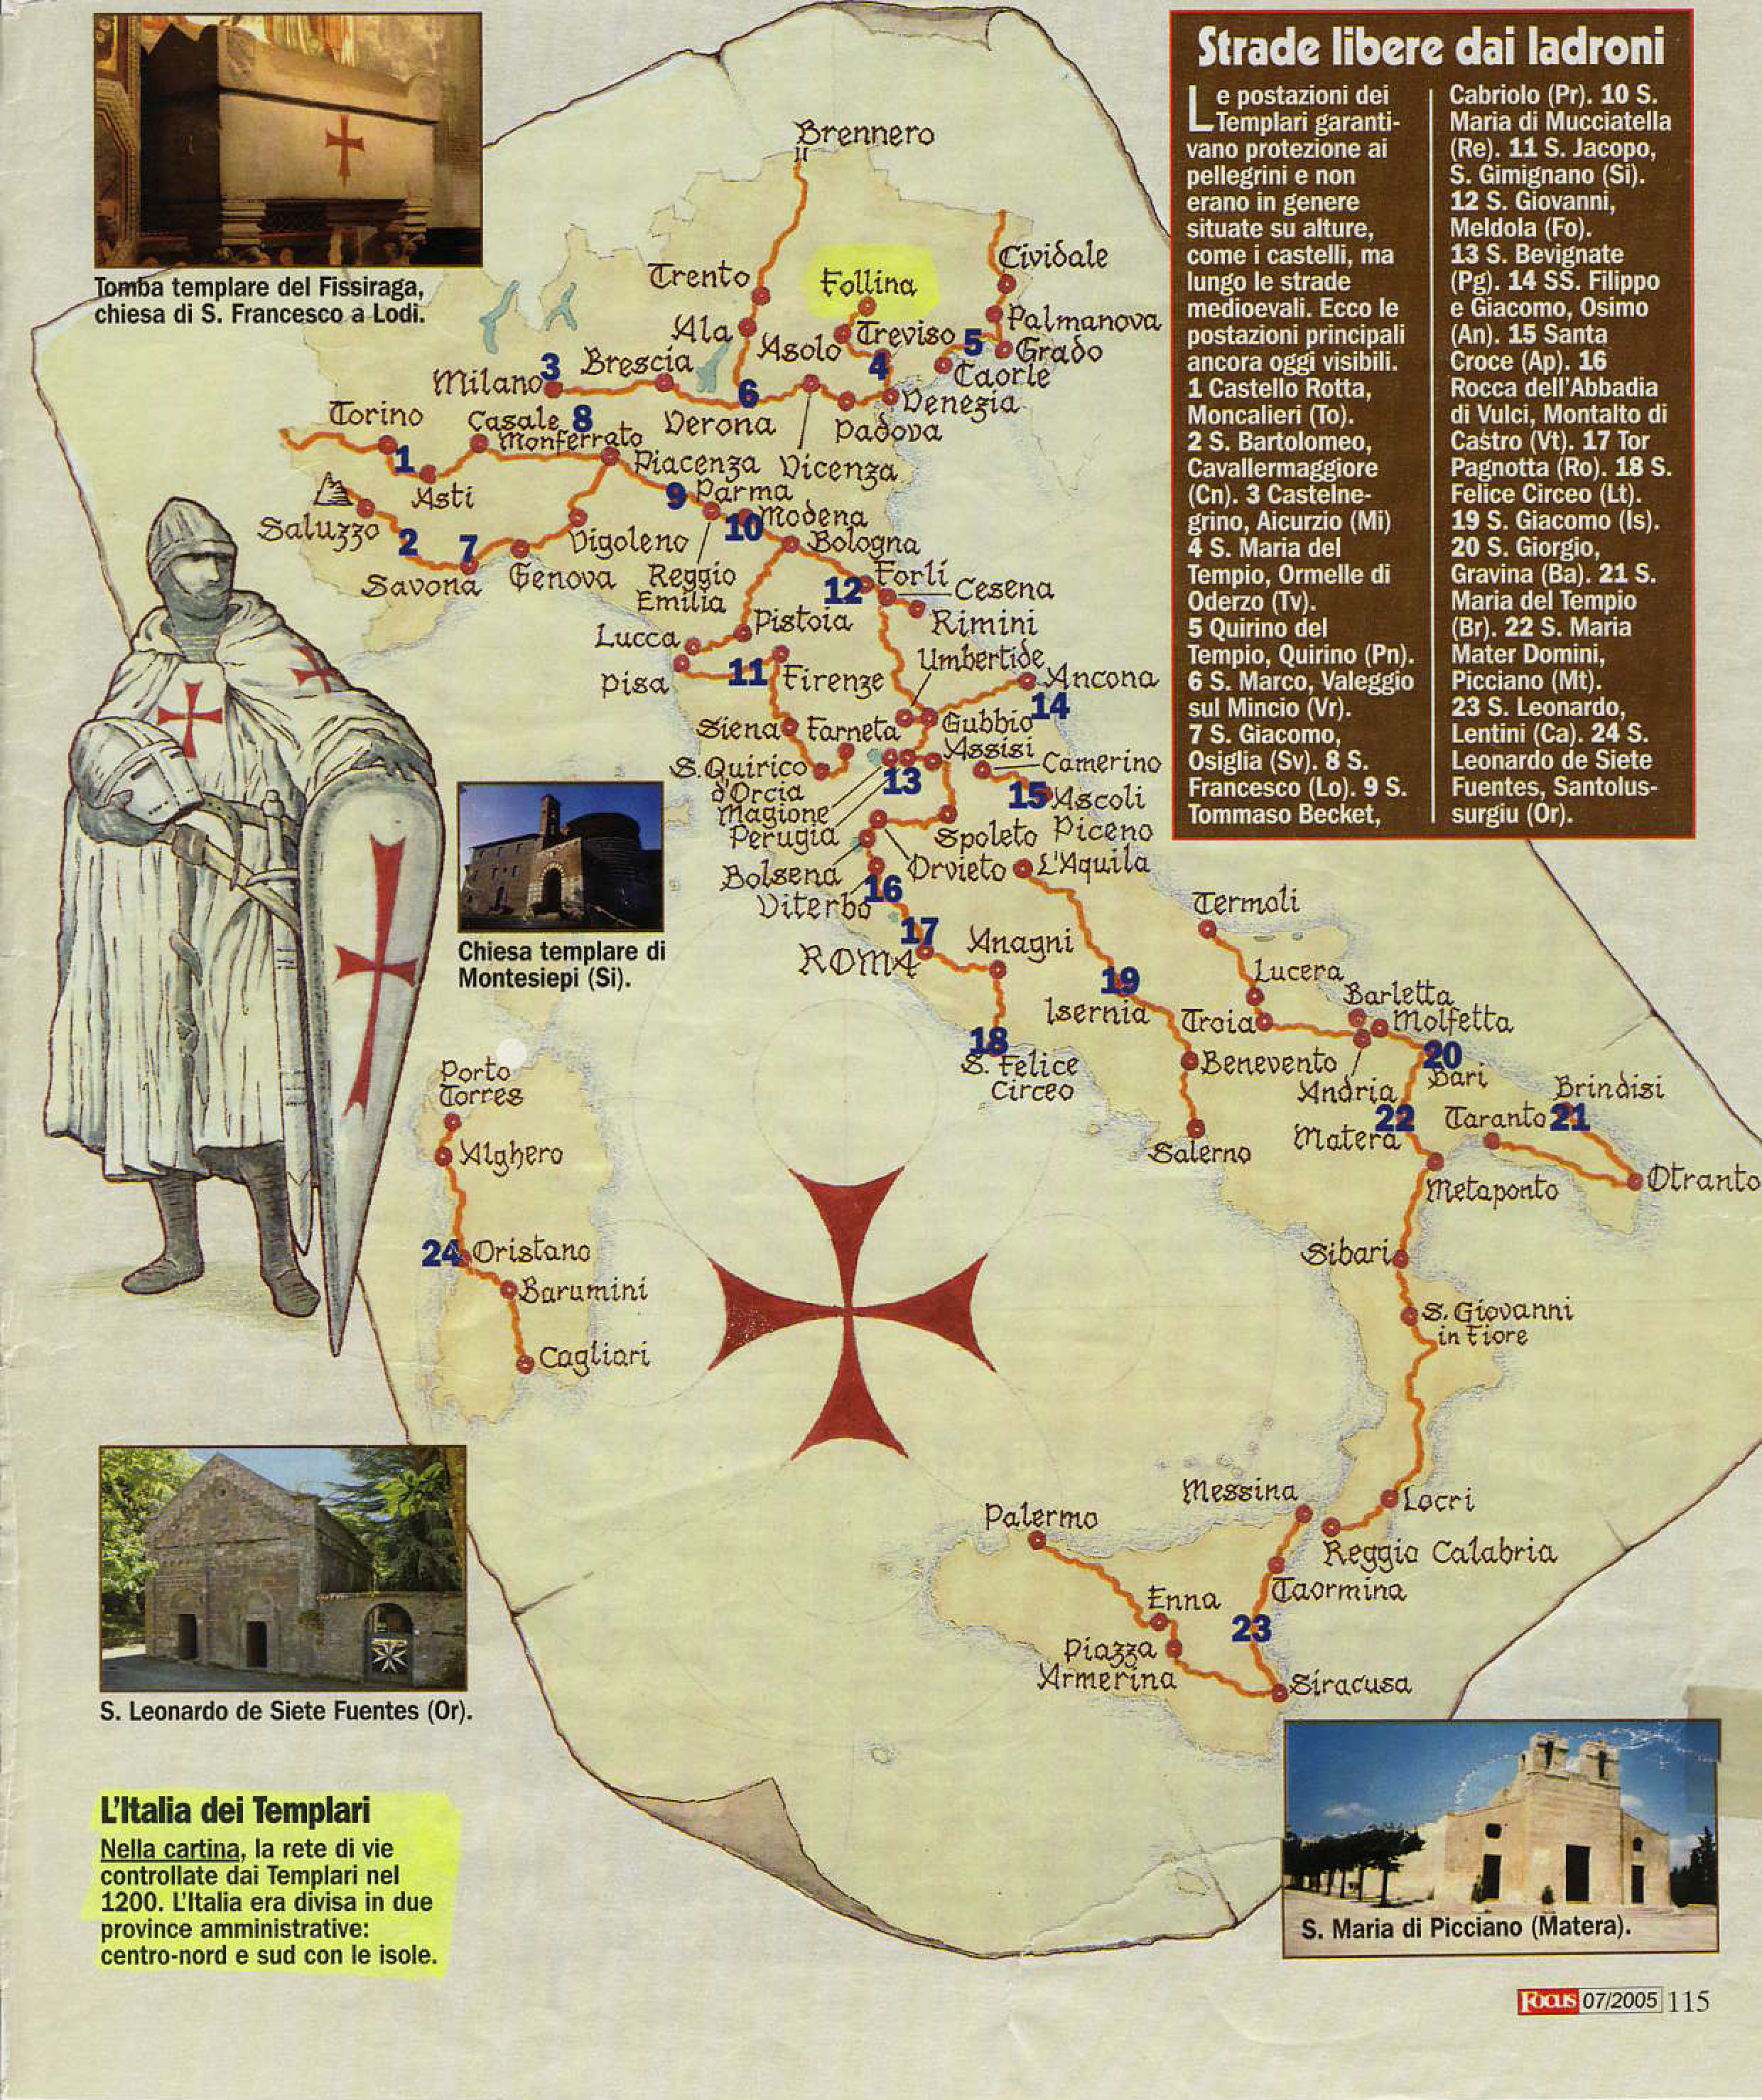 images/Cartina-dei-luoghi-templari-in-italia.jpg